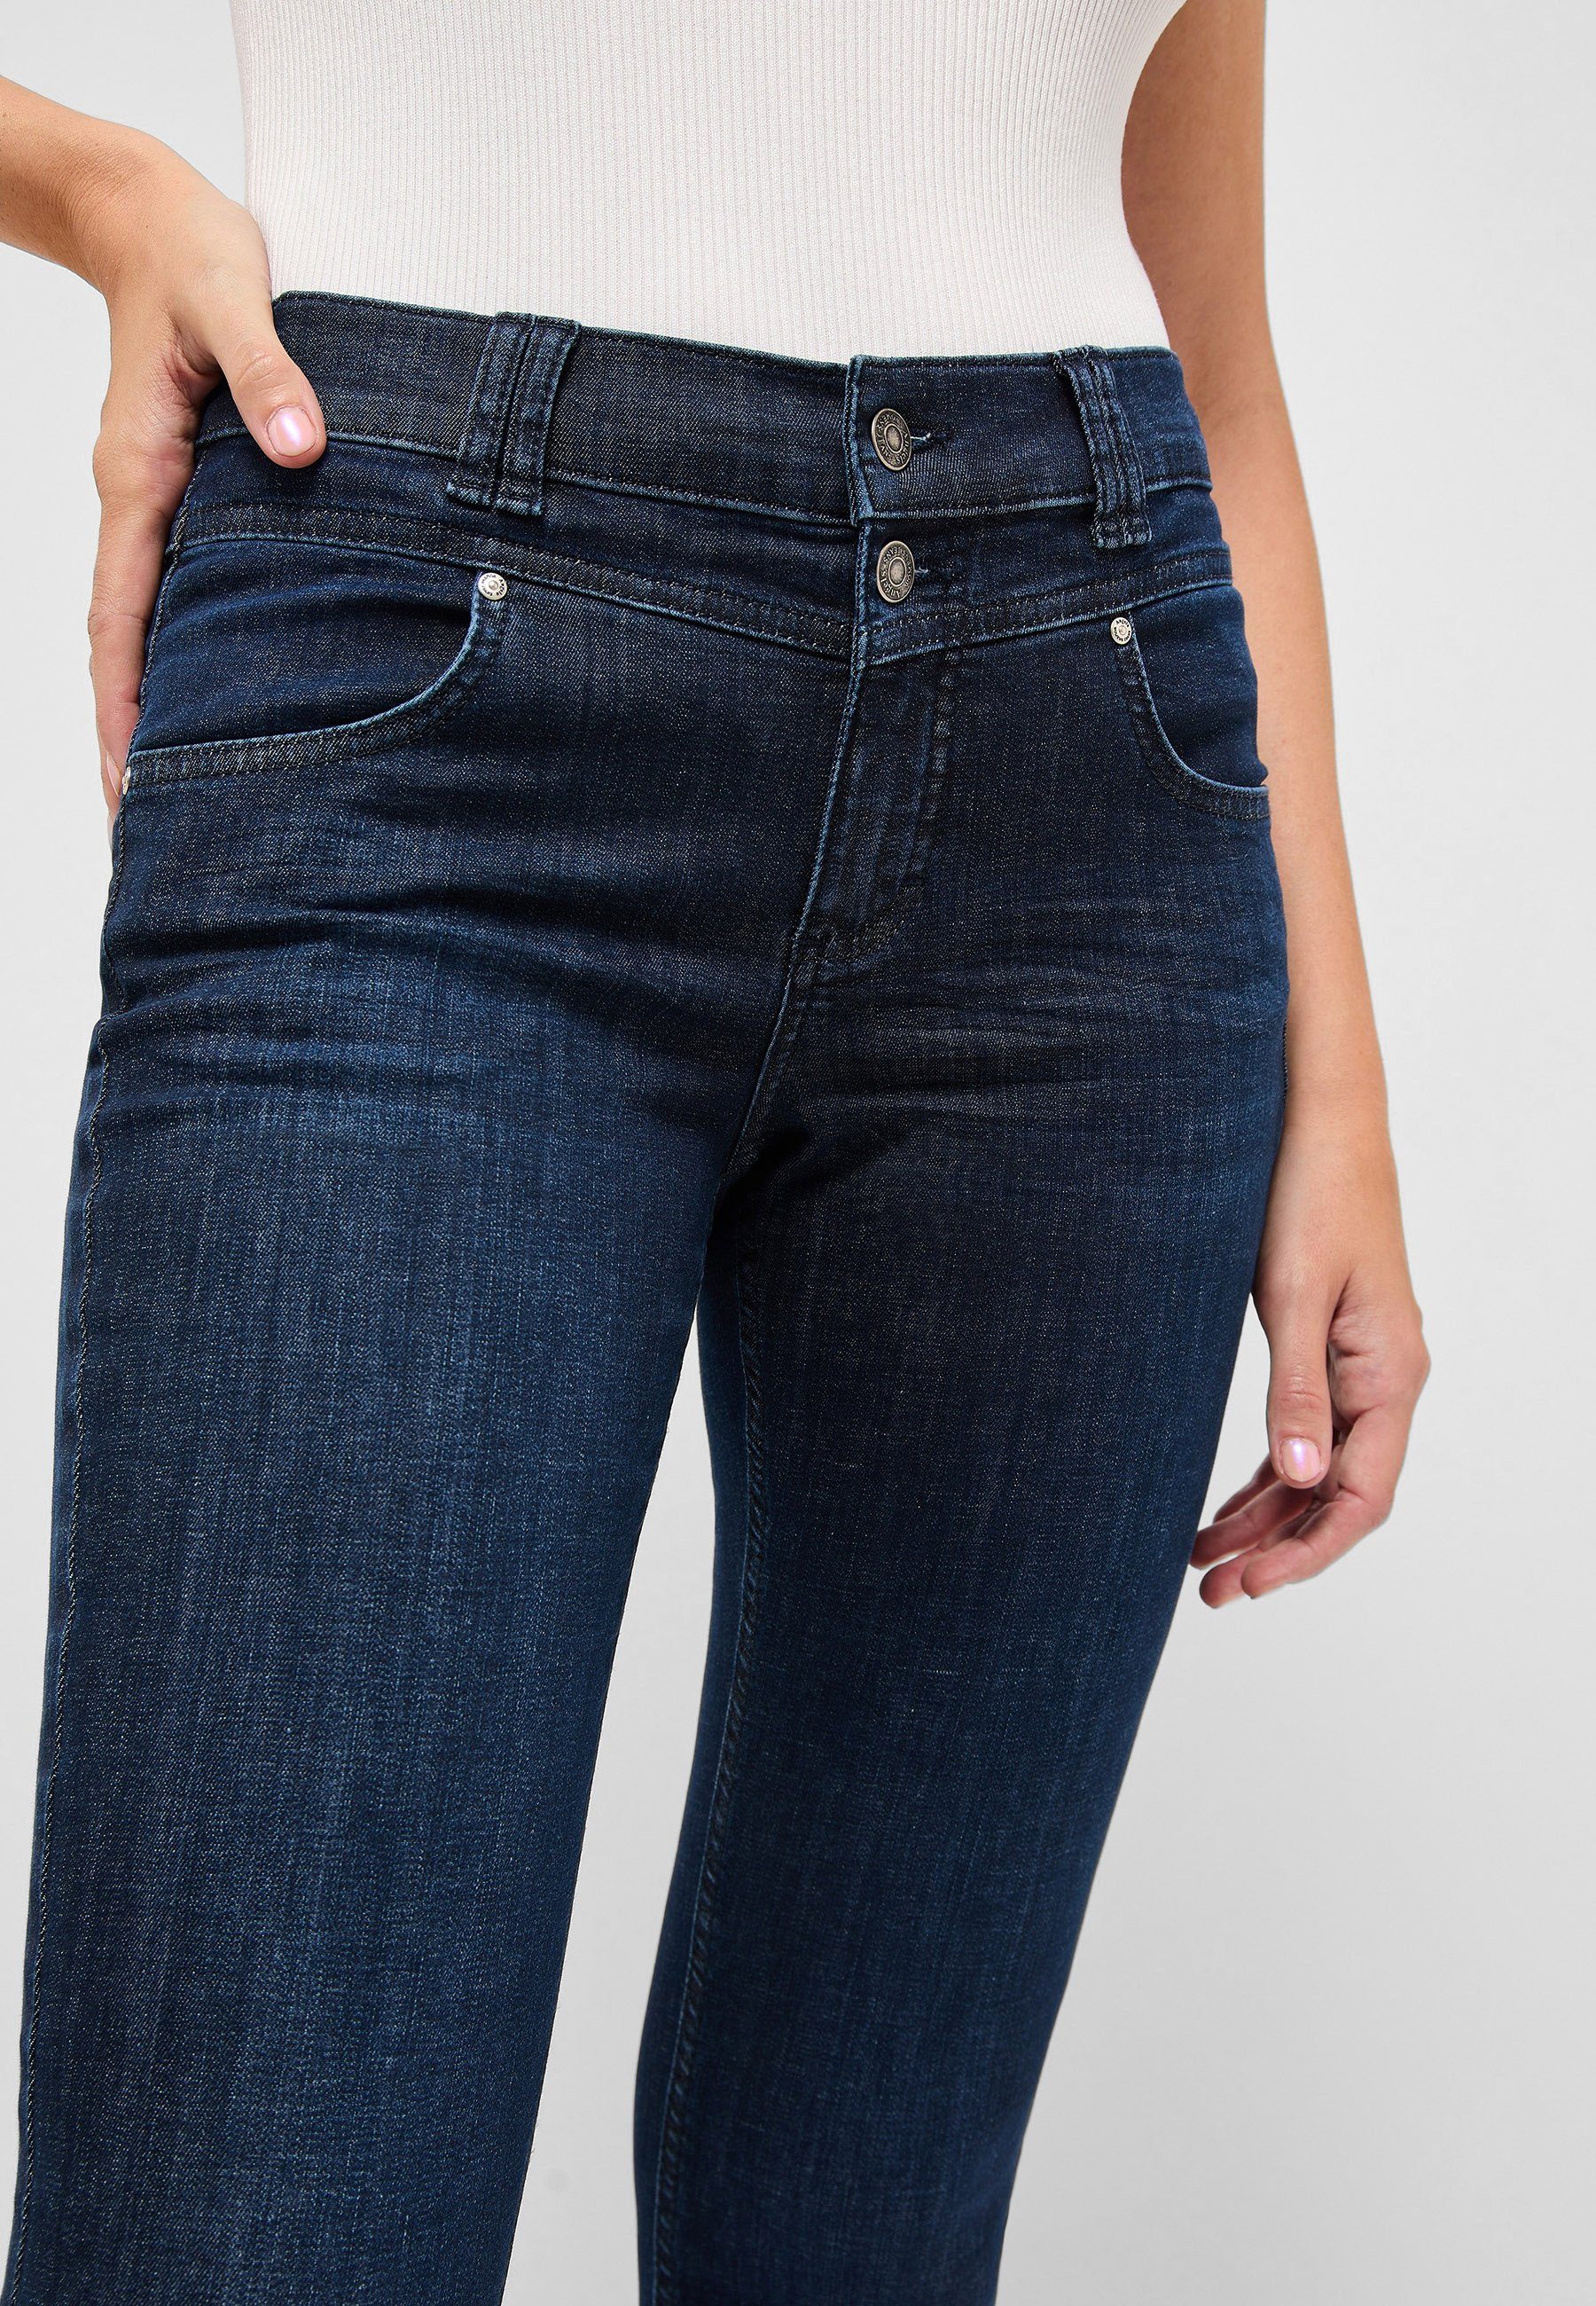 authentischem Skinny Jeans Button mit Slim-fit-Jeans indigo Denim ANGELS